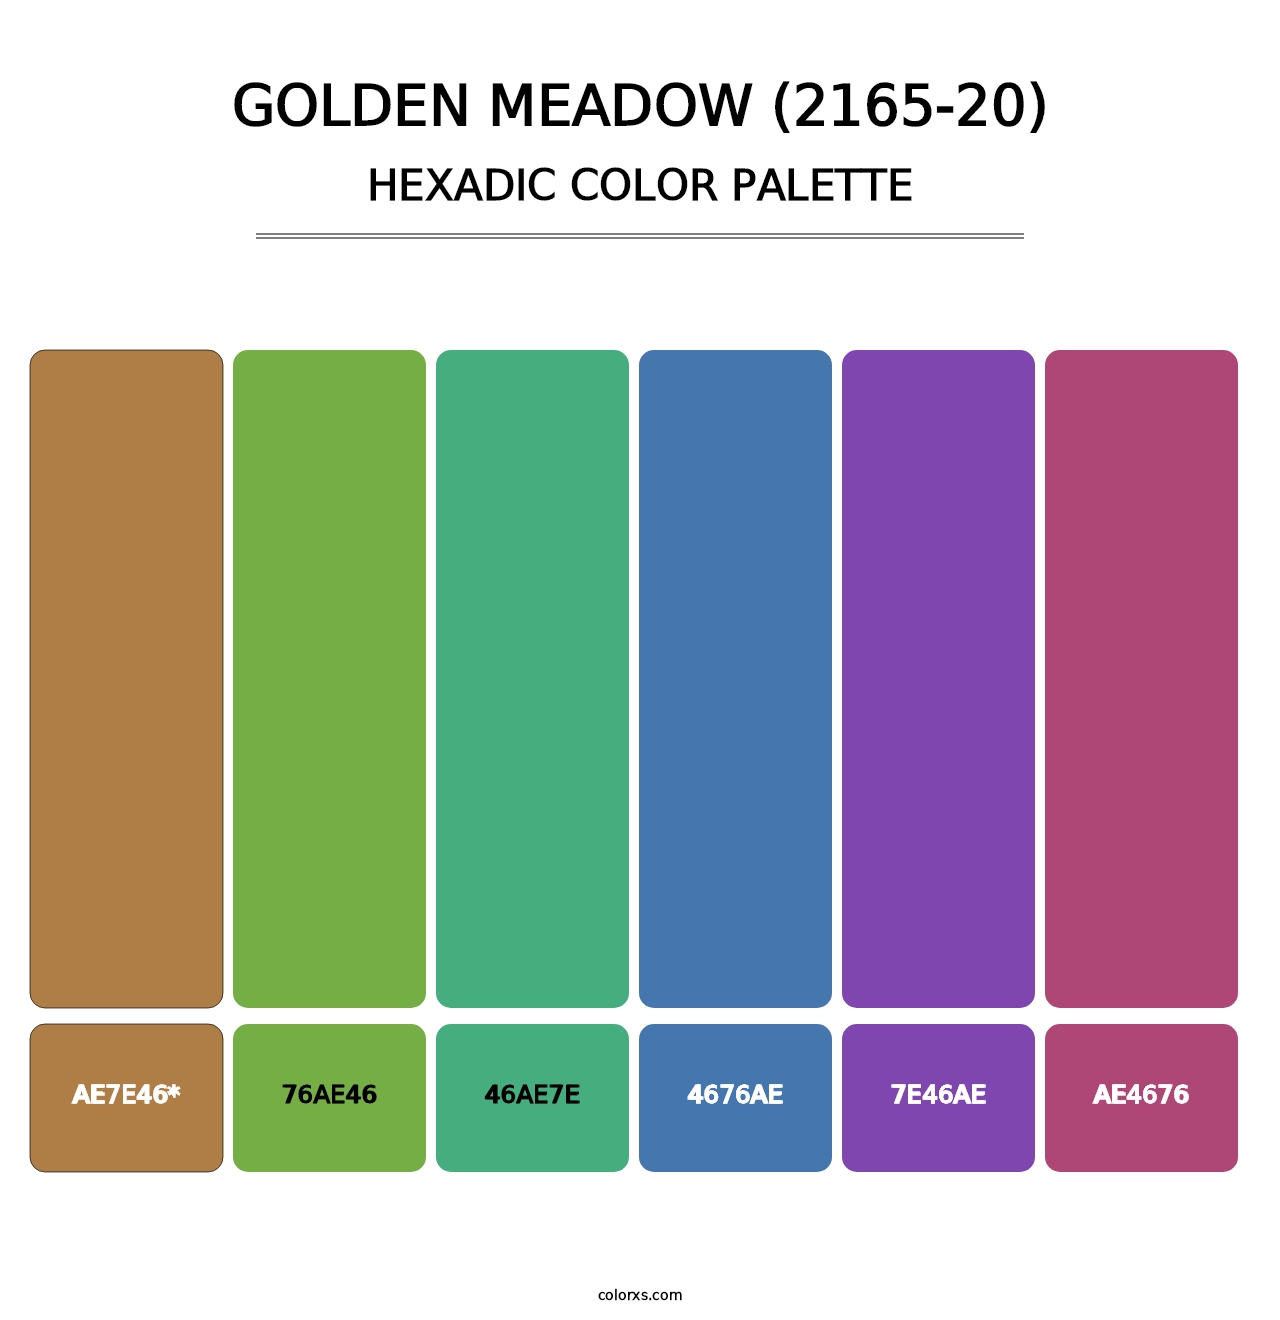 Golden Meadow (2165-20) - Hexadic Color Palette